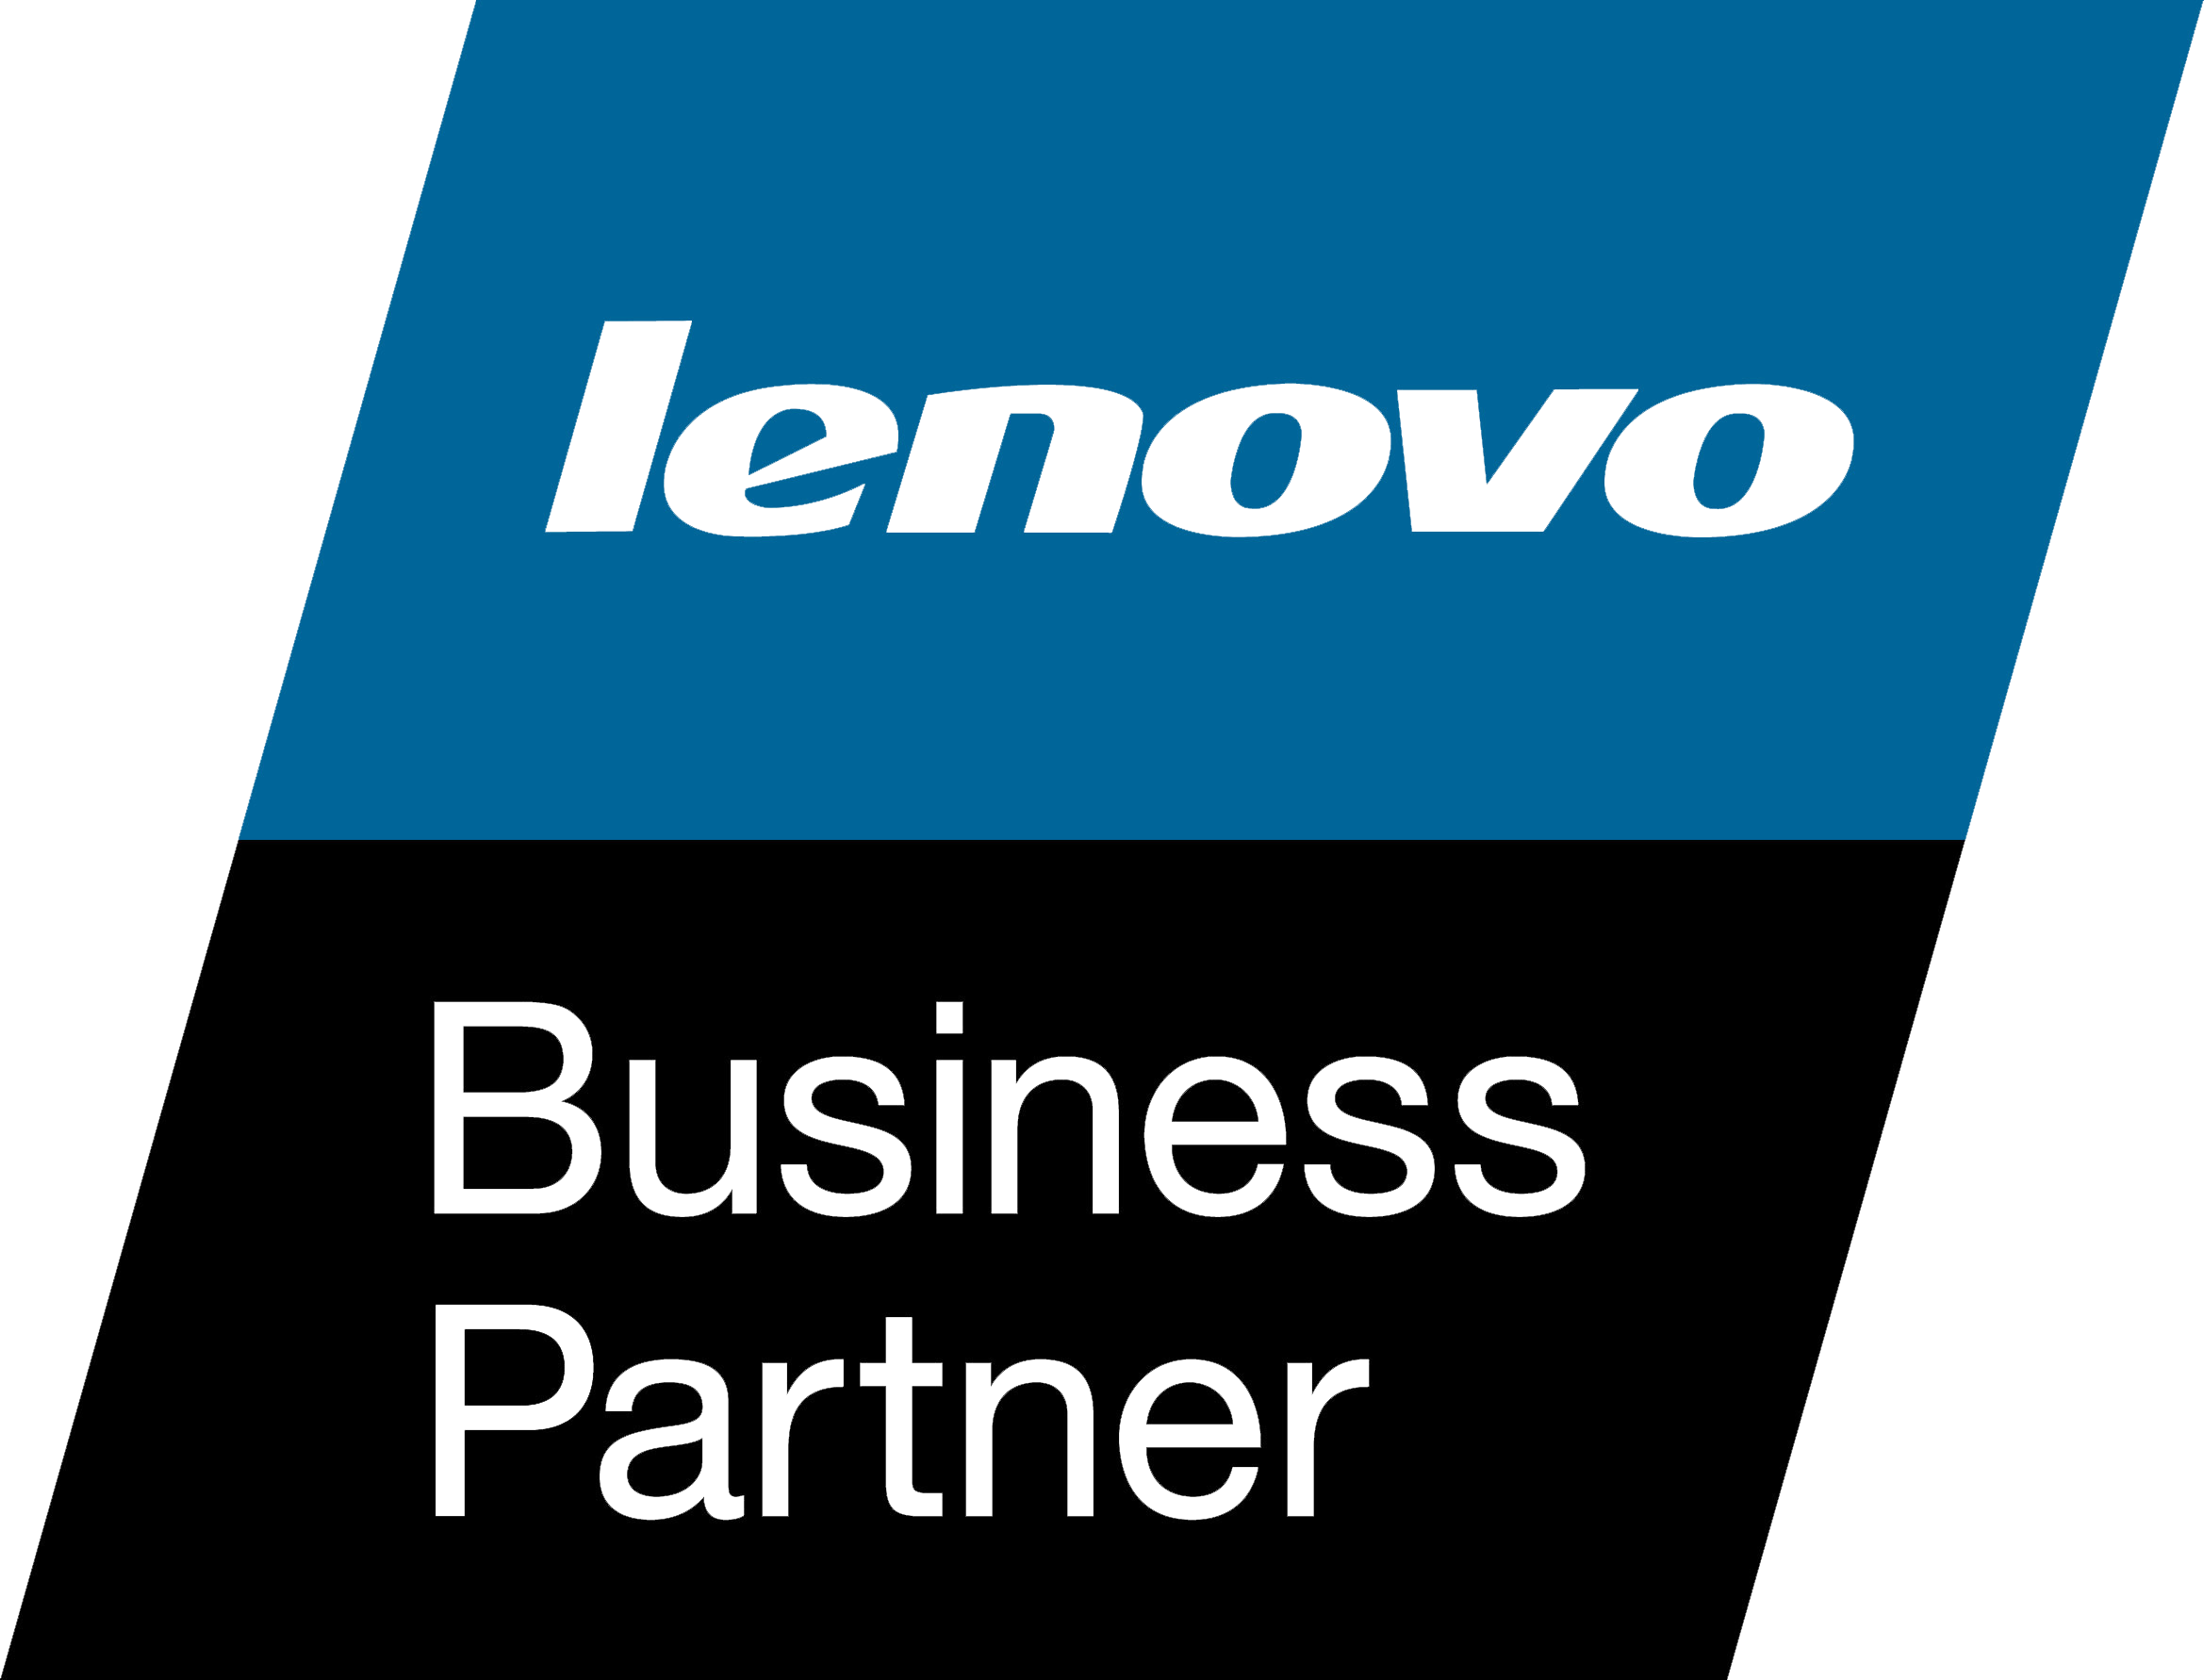 LenovoBusinessPartner1.png